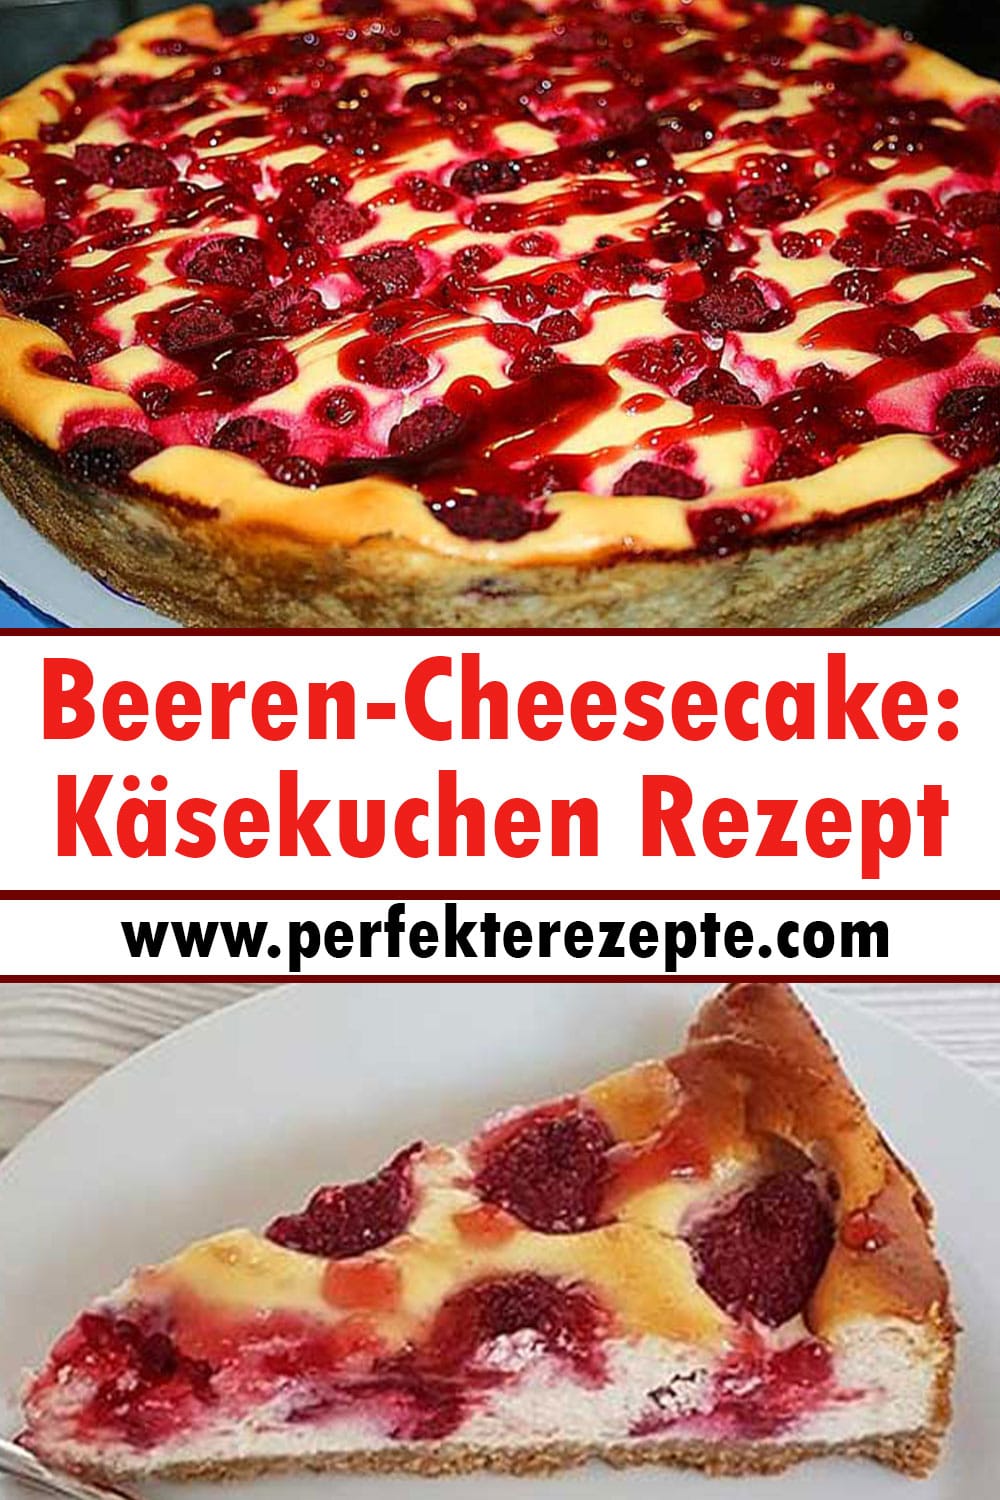 Beeren-Cheesecake: Käsekuchen Rezept